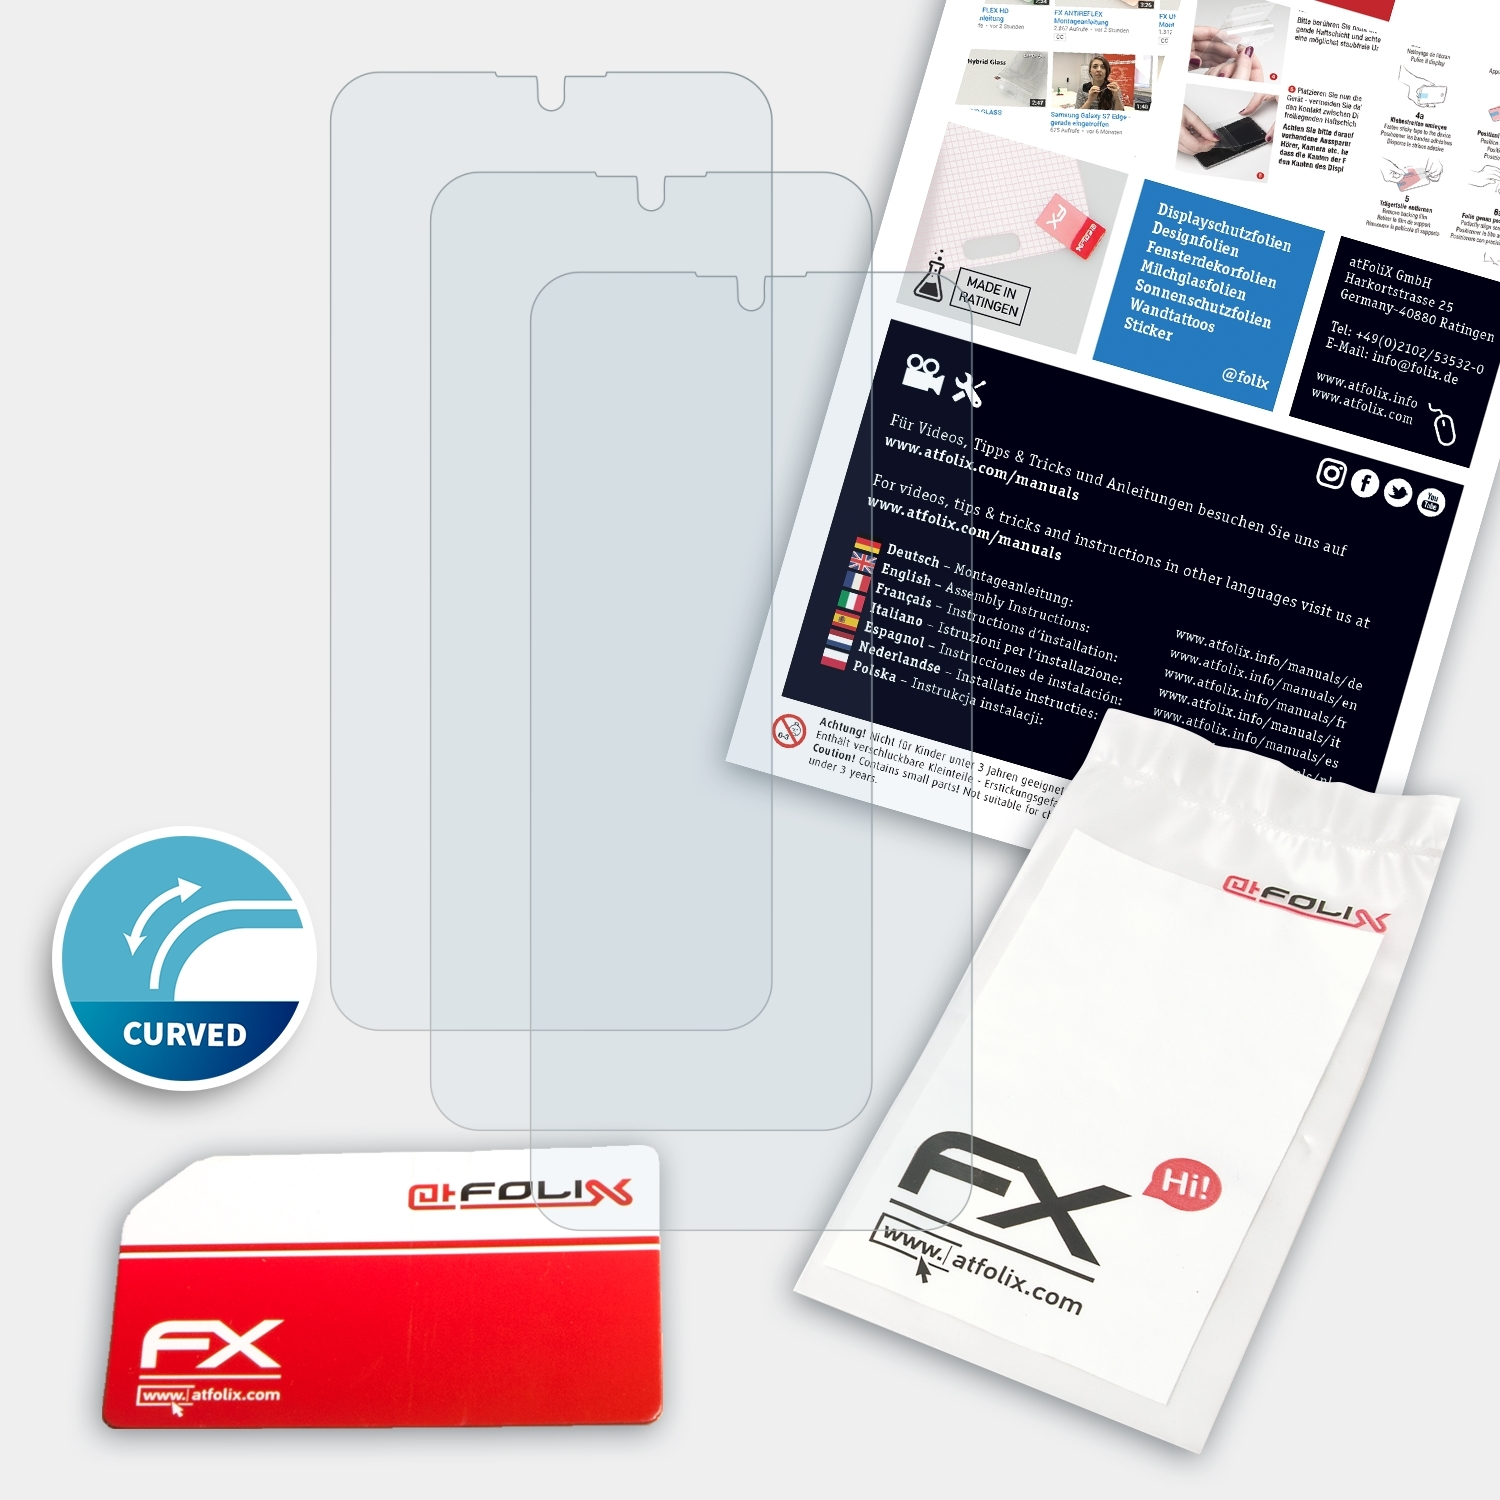 Displayschutz(für Vivo 3x Y15) FX-ActiFleX ATFOLIX